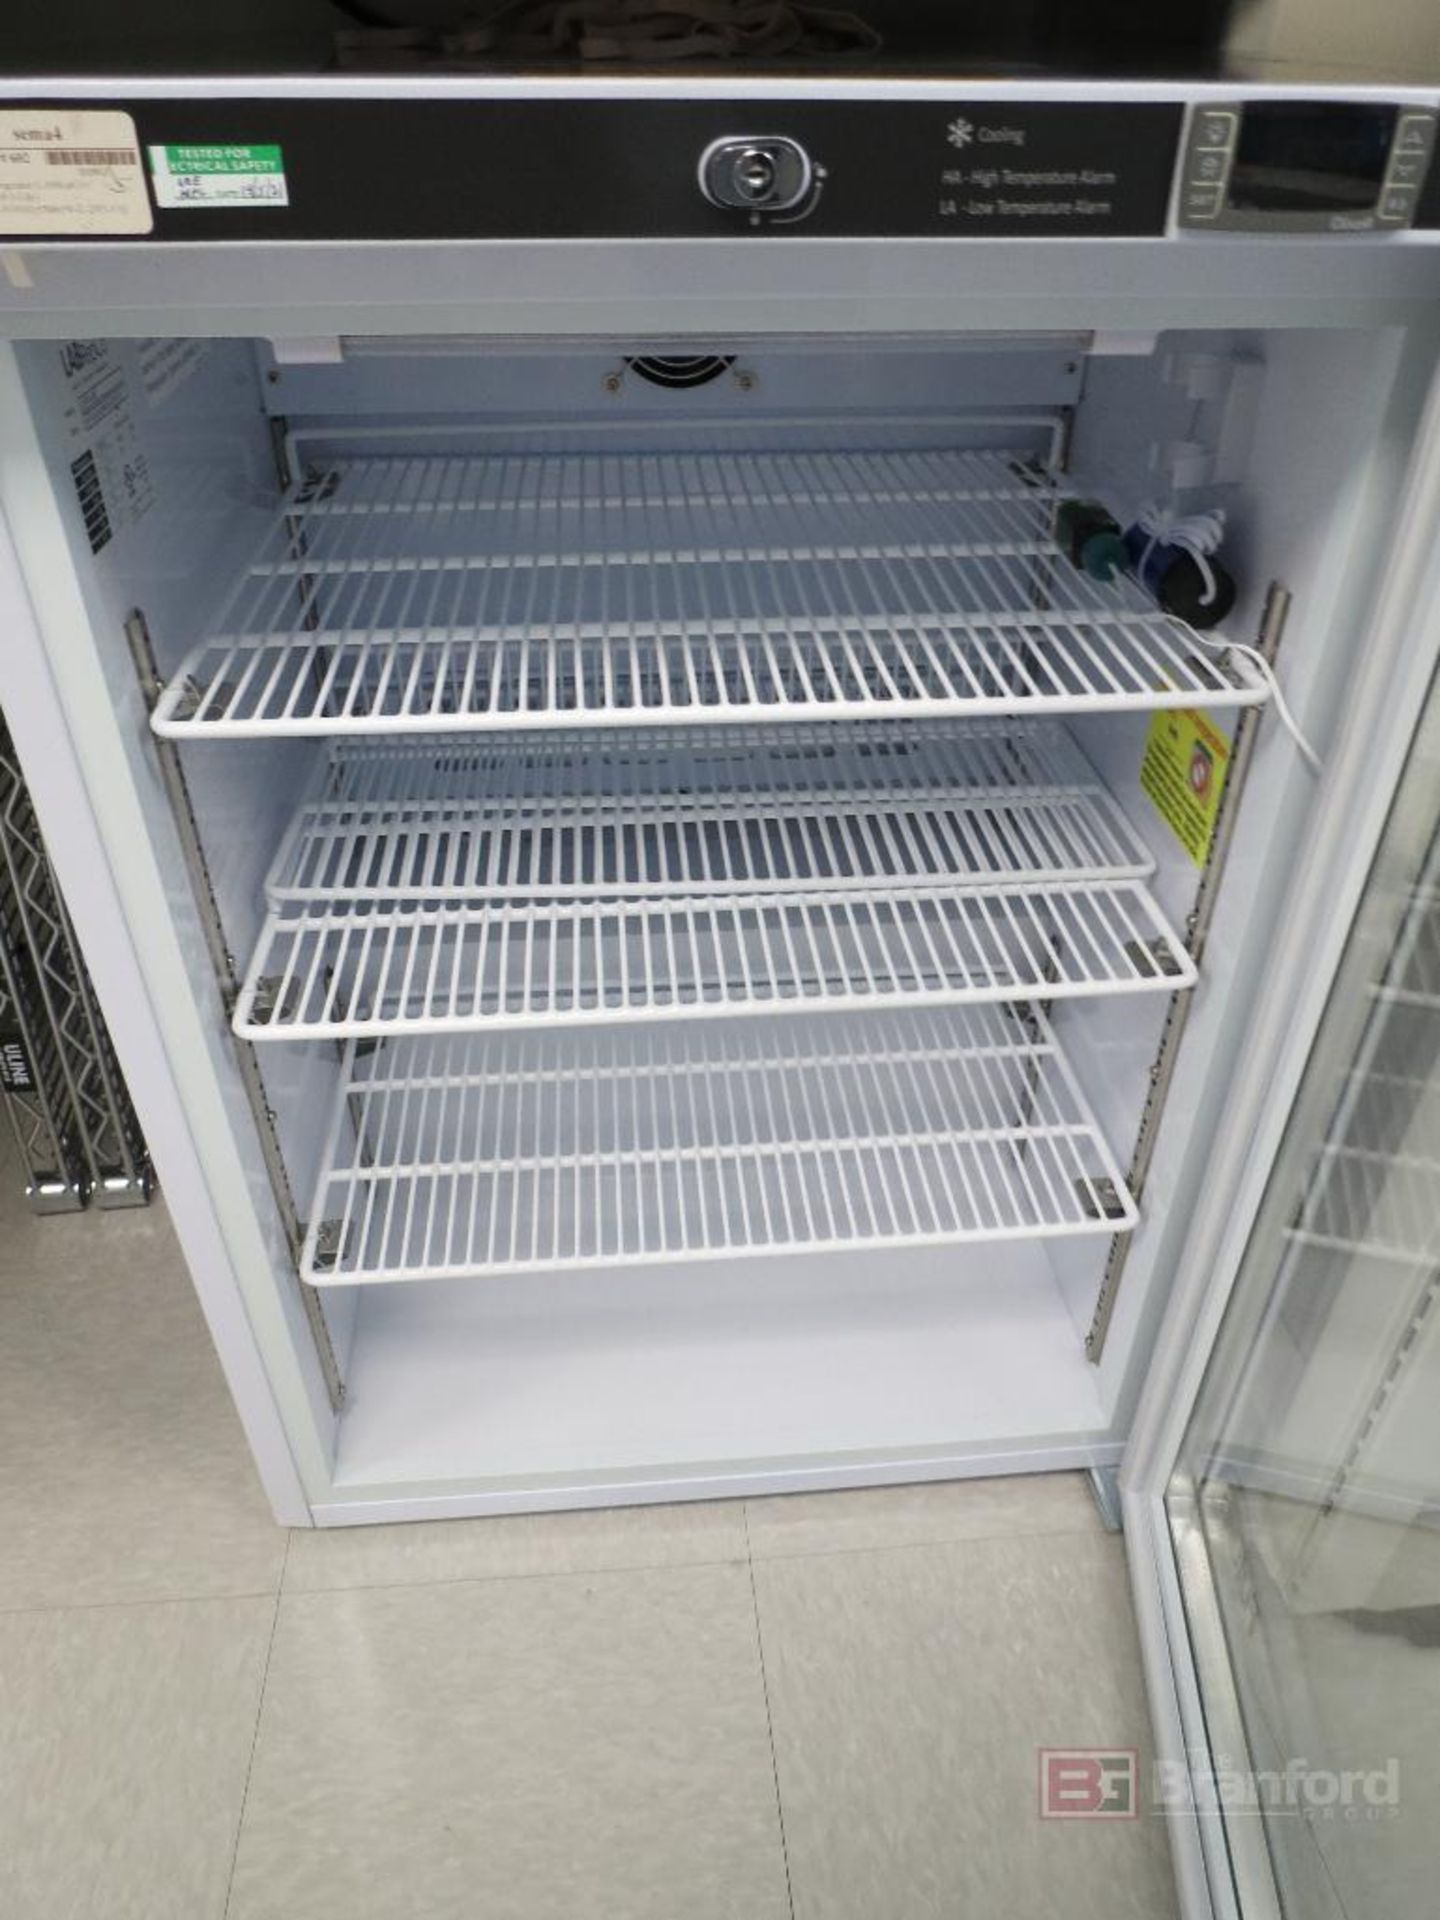 LabRepCo LHP-5-URBG Futura +4°C Glass Door Refrigerator - Image 3 of 4